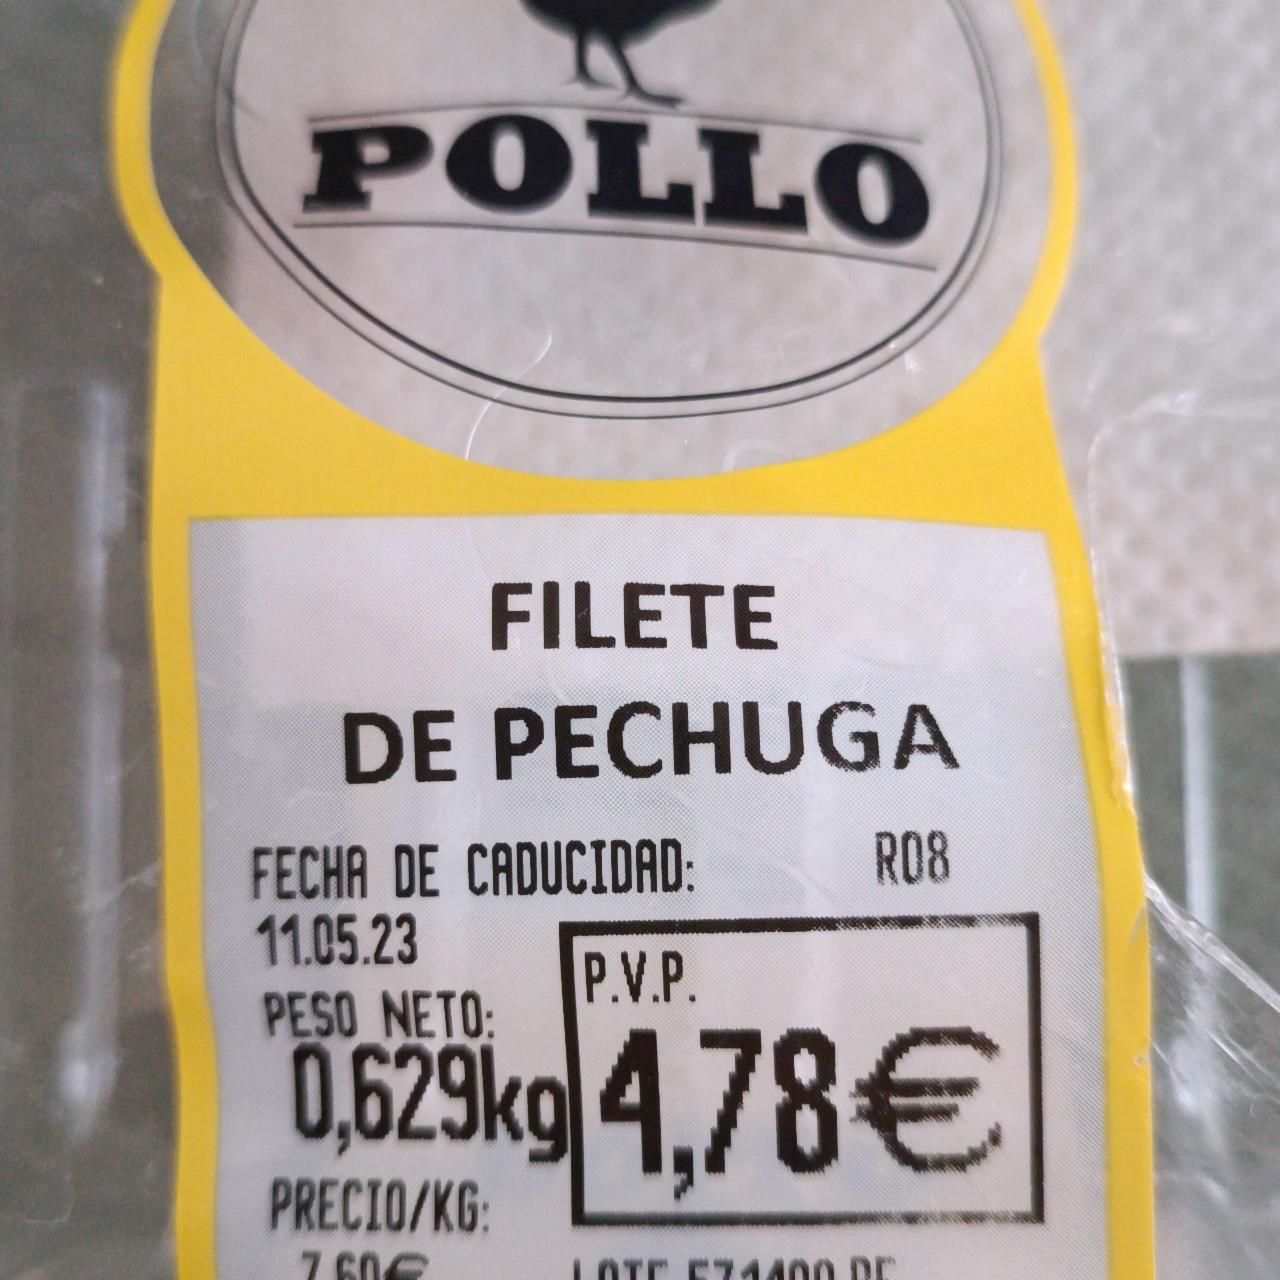 Fotografie - Filete de pechuga Pollo